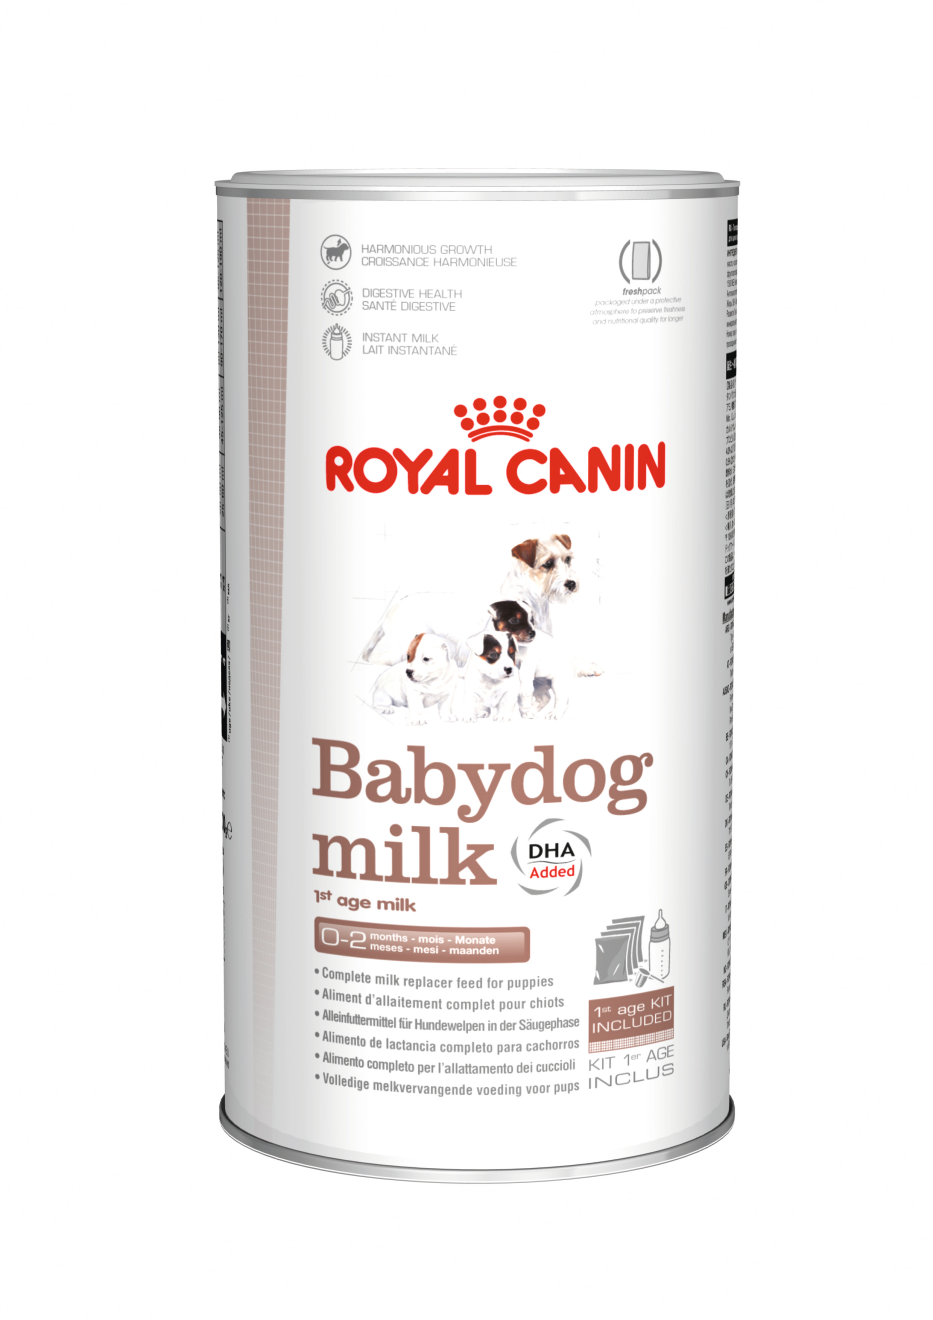 Packshot Royal Canin Babydog Milk allimentation des chiots